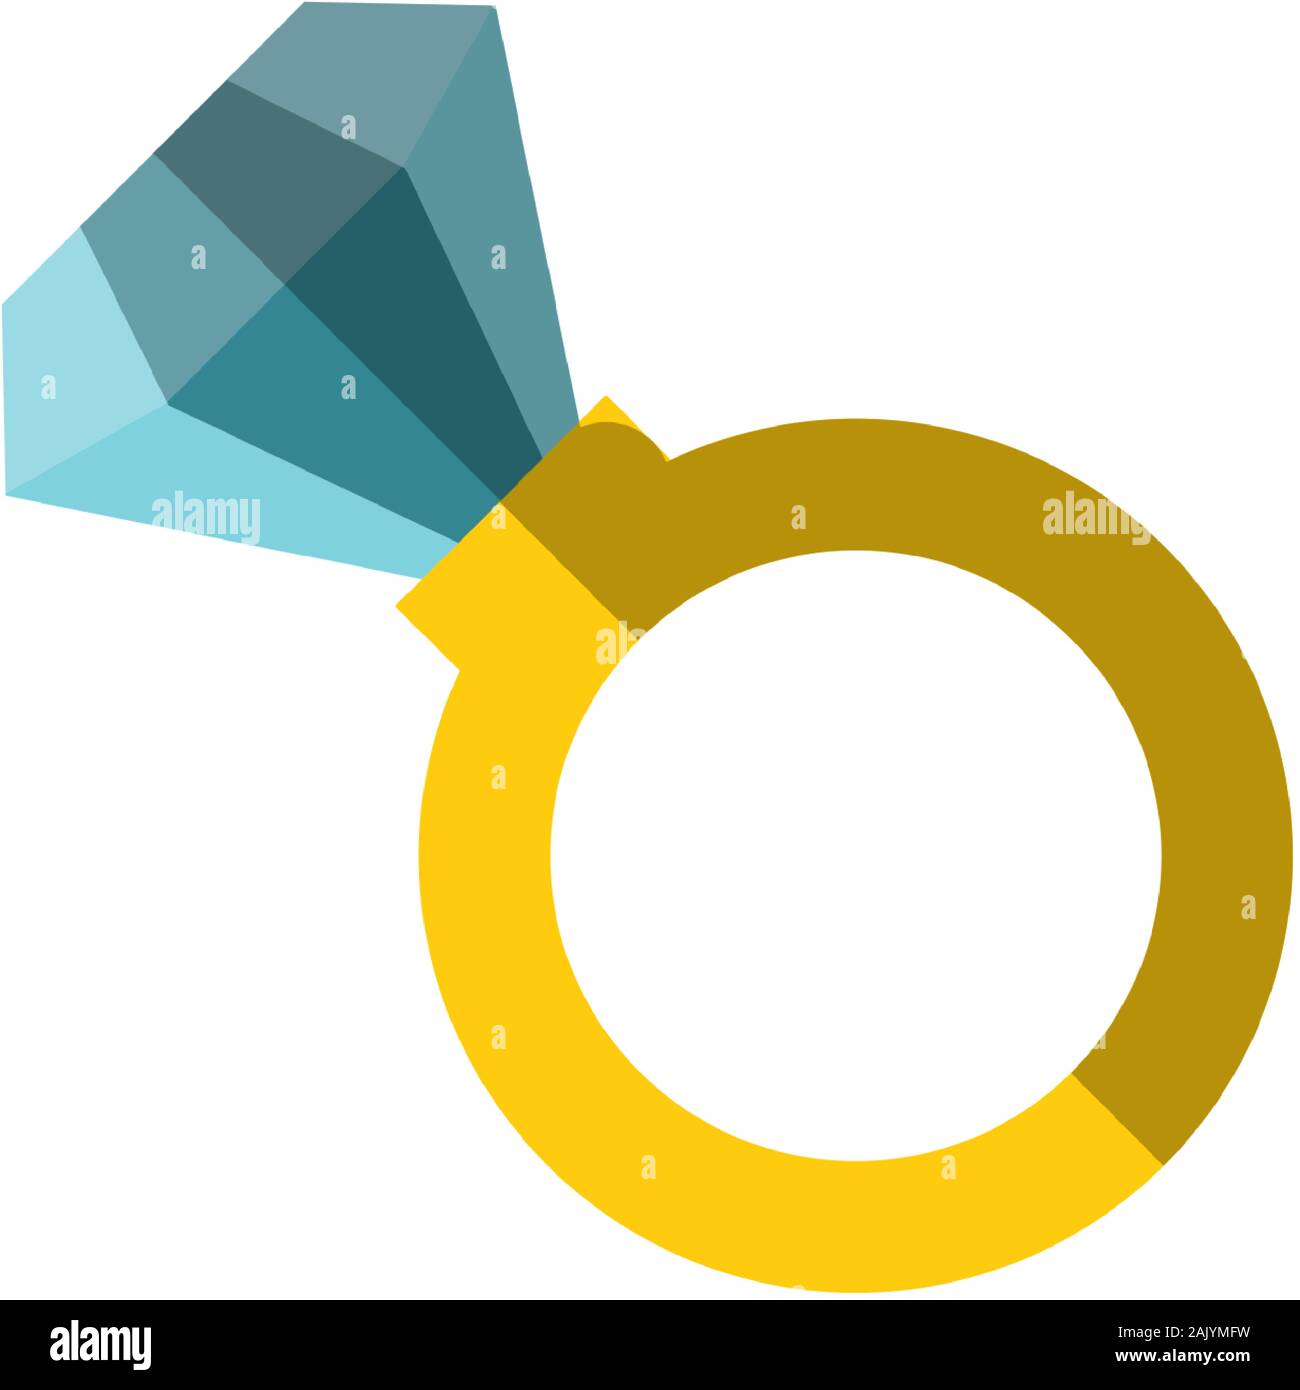 Vektor flachbild Symbol mit einem Ring mit riesigen Diamanten. Einfache ring Abbildung mit incrustrated teuer Luxus Edelstein. Diamond in einem Ring, Vektor Stock Vektor